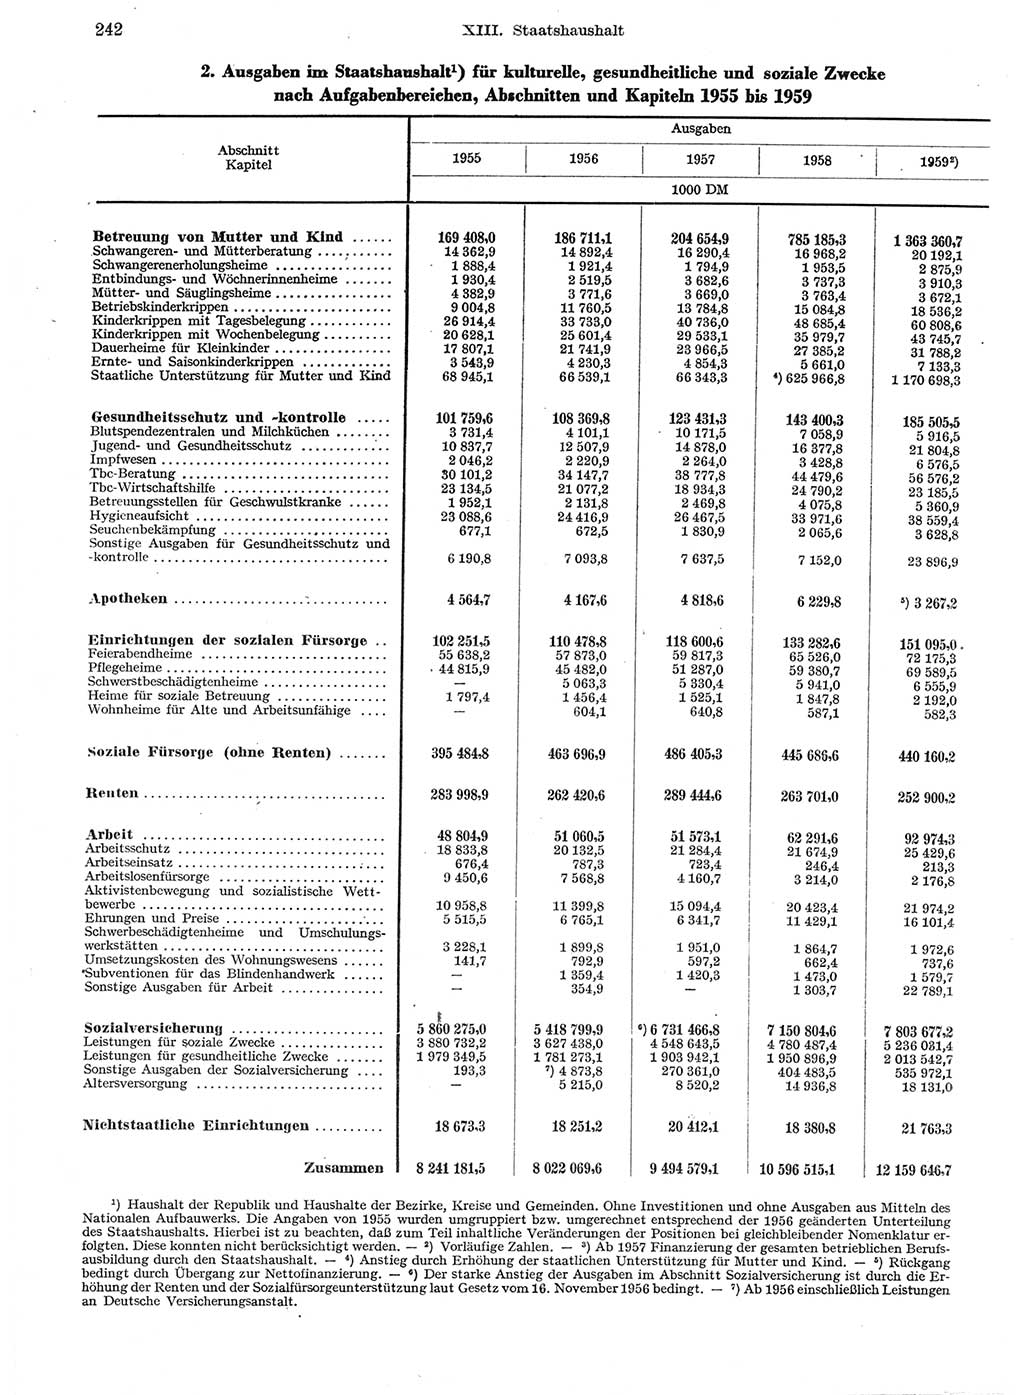 Statistisches Jahrbuch der Deutschen Demokratischen Republik (DDR) 1959, Seite 242 (Stat. Jb. DDR 1959, S. 242)